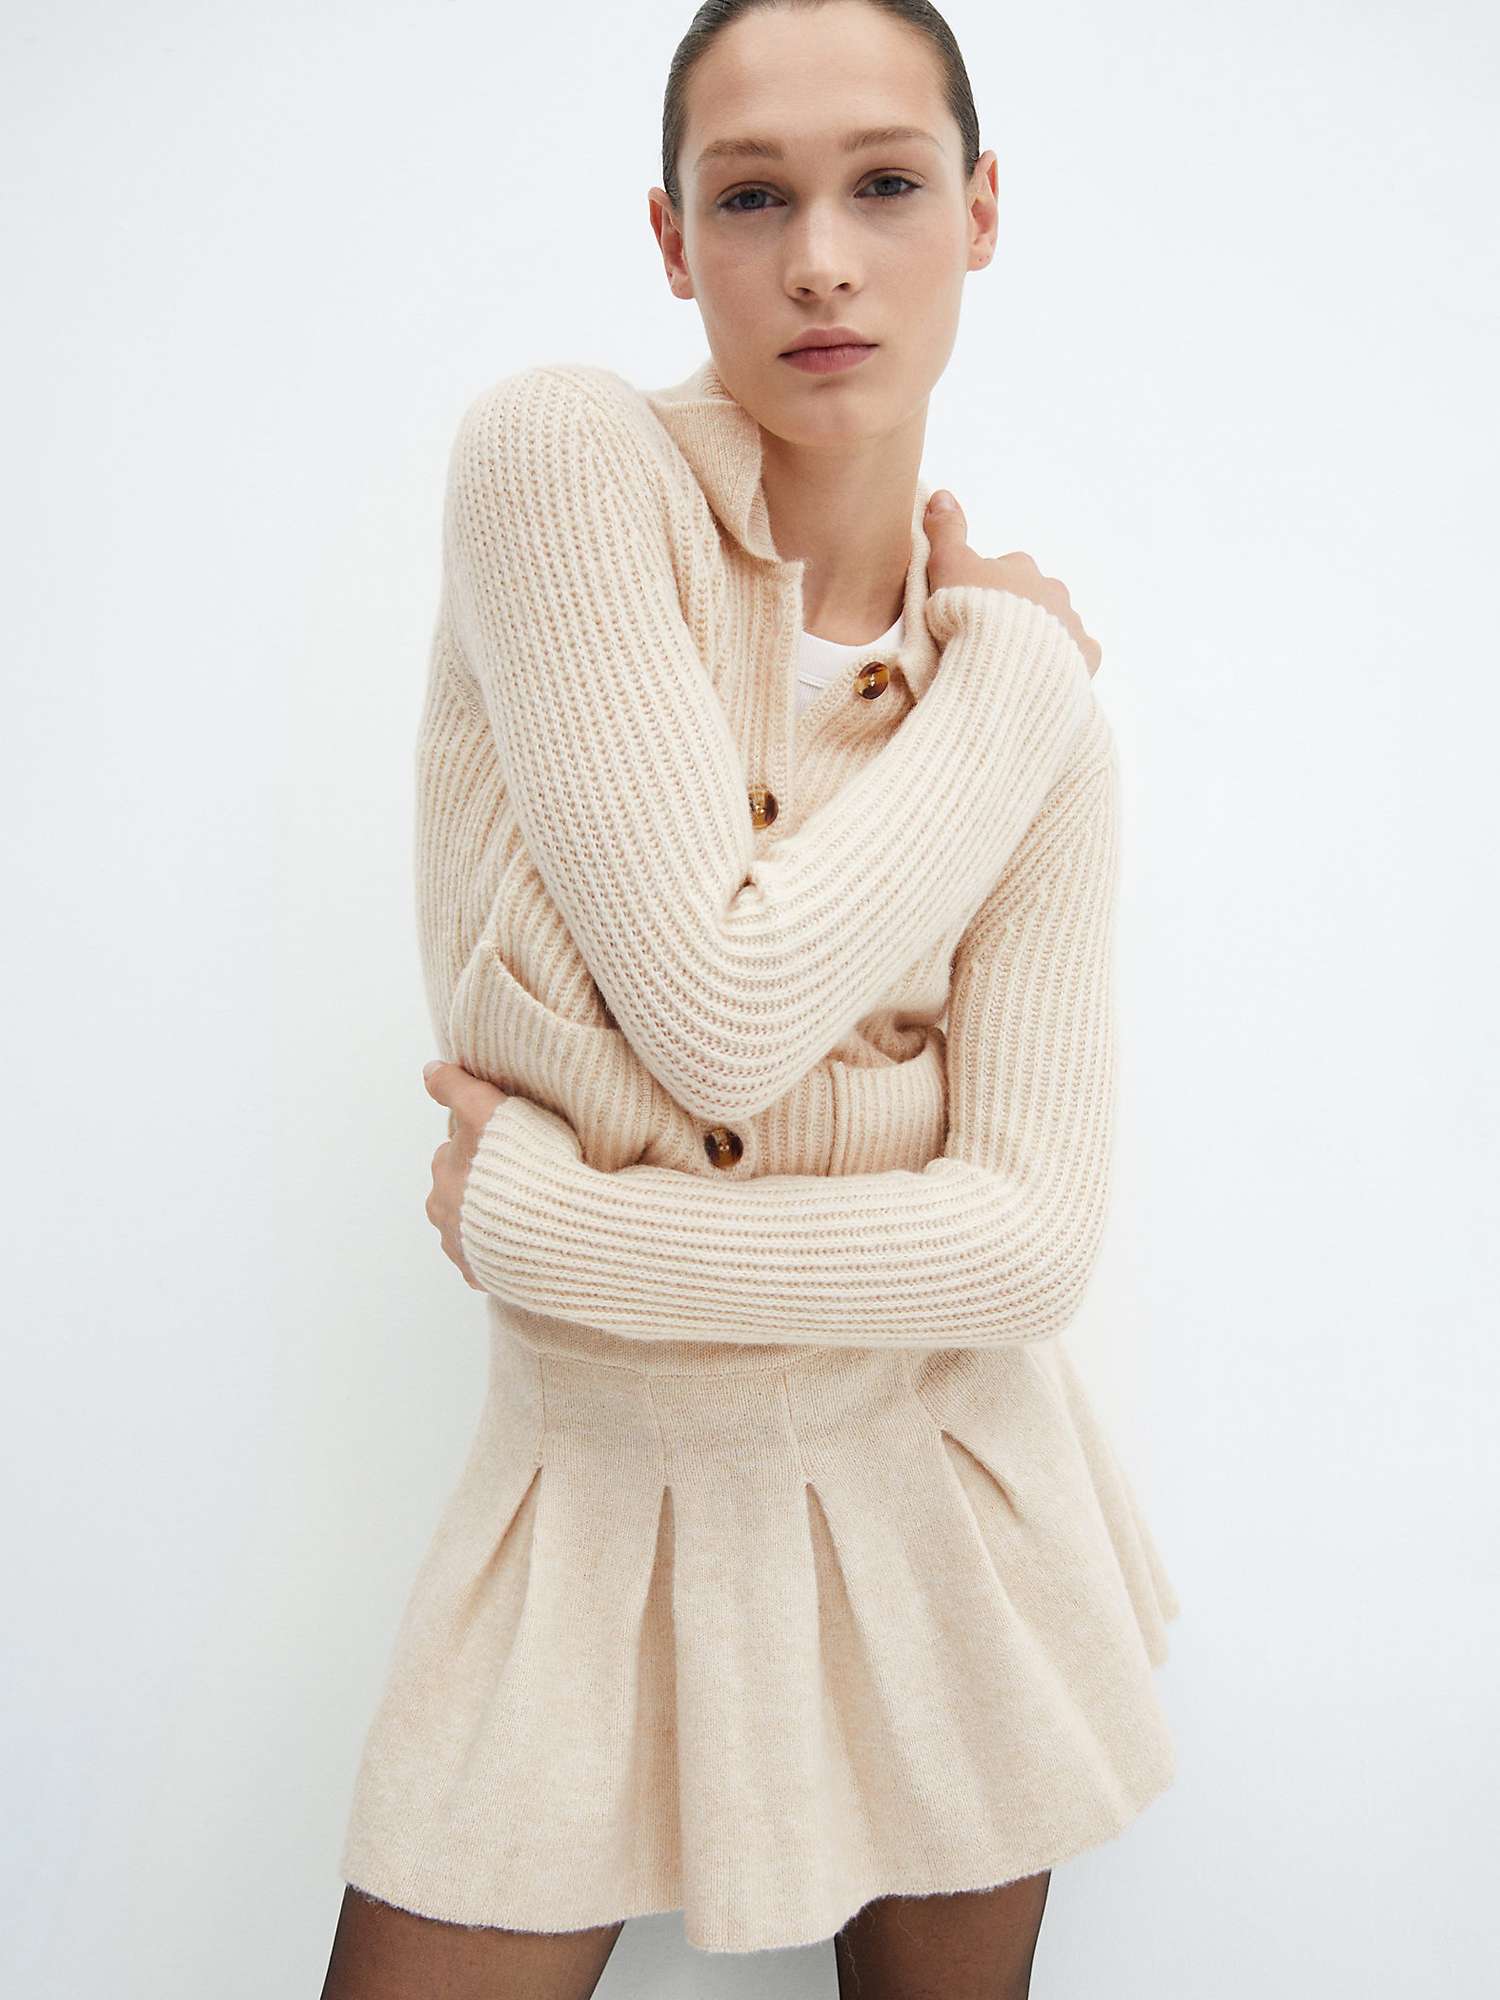 Buy Mango Marisas Wool Blend Skirt, Light Pastel Brown Online at johnlewis.com